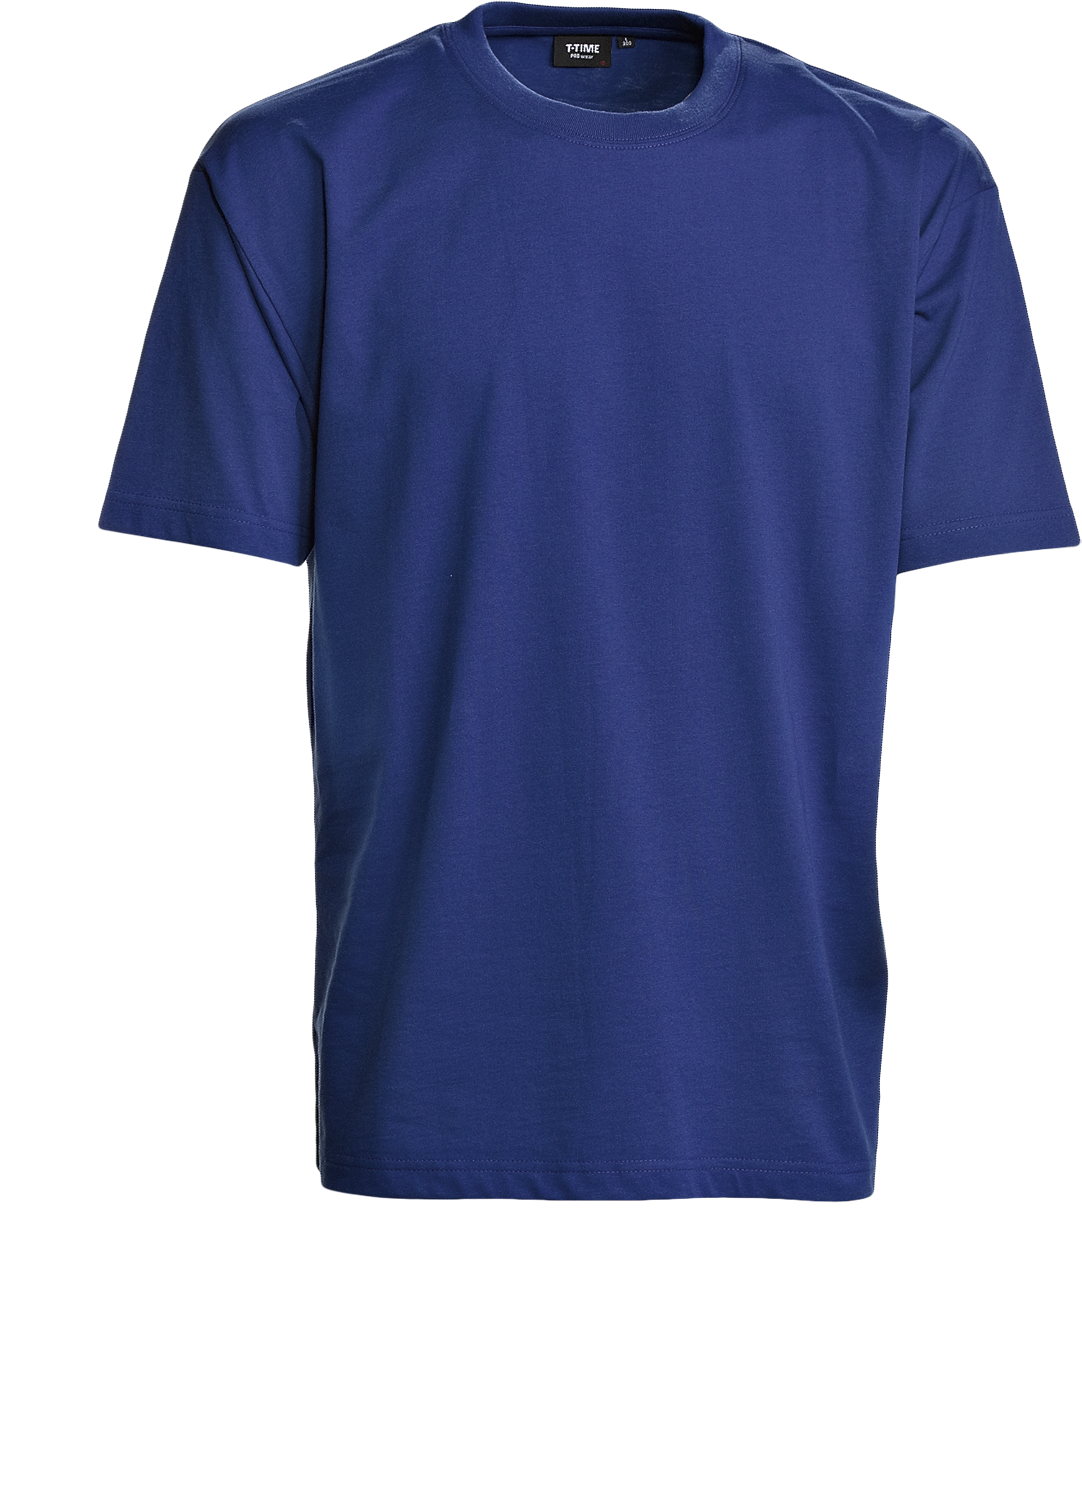 Blå Unisex T-shirt, Prowear (8150211)